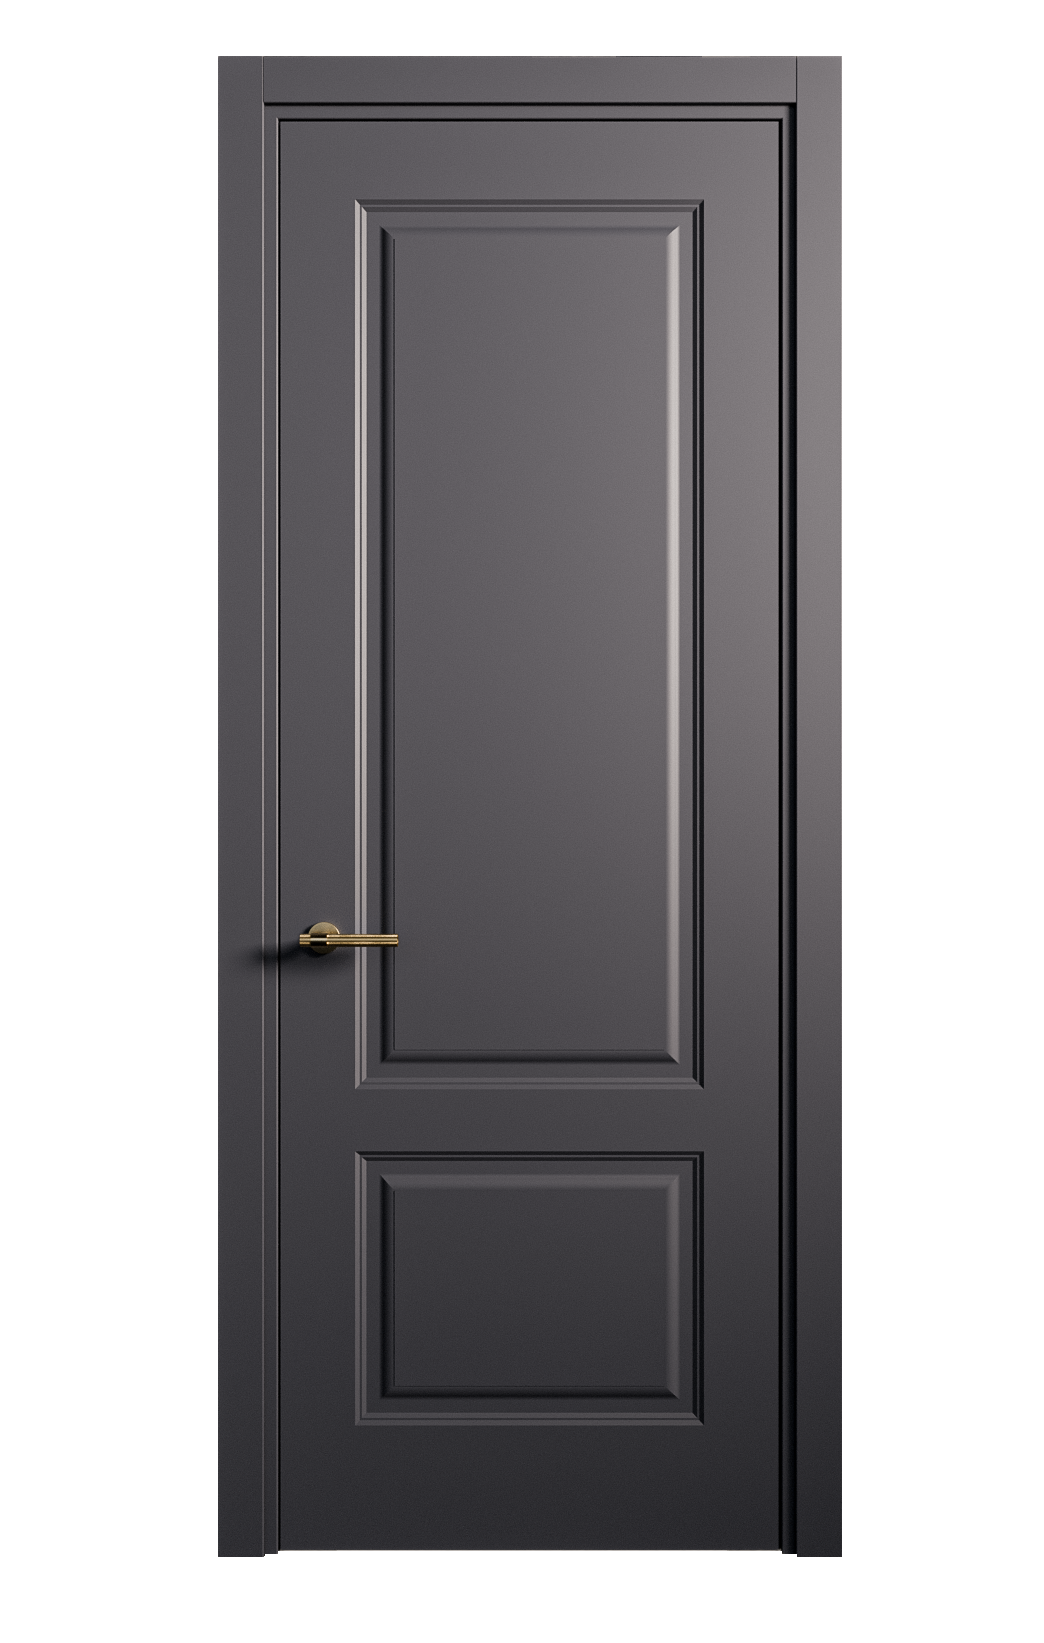 Межкомнатная дверь Вита-1 глухая эмаль ral 7024 26239